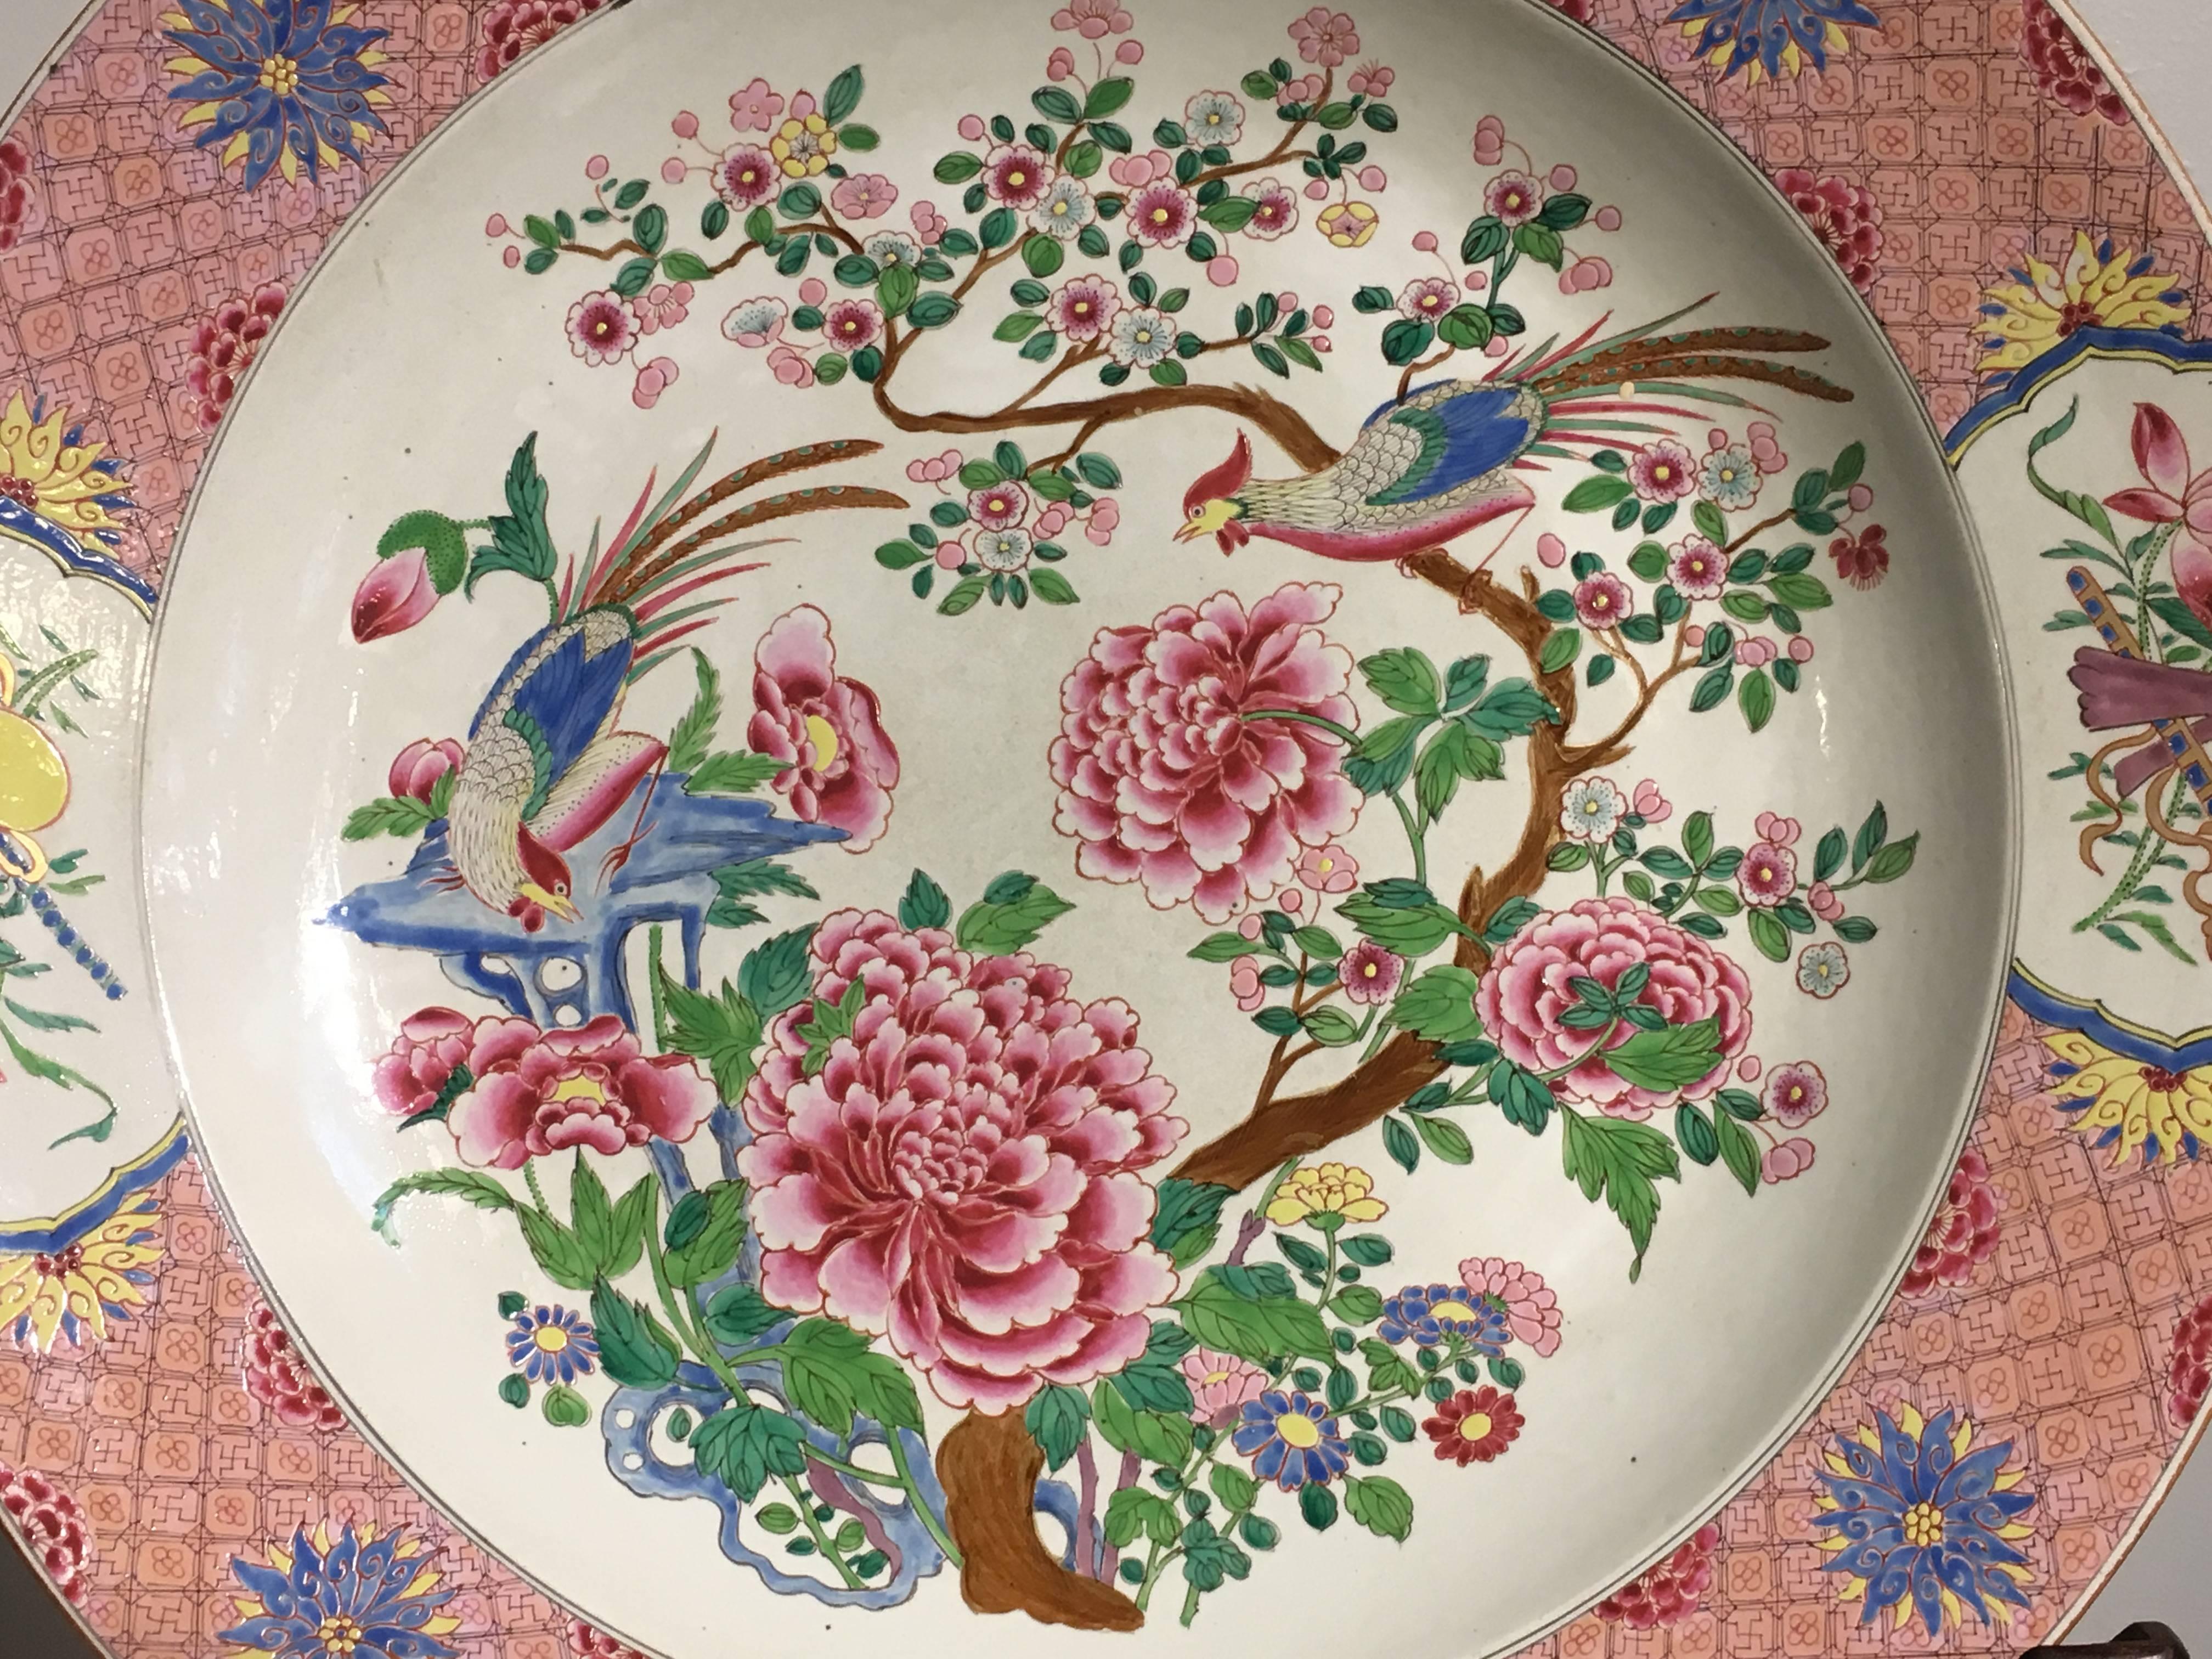 Un chargeur massif de style export chinois émaillé de la famille rose, continental, probablement français, vers 1900.

Le grand plat est peint en émaux de la famille rose dans un ton général rose, avec un motif central représentant un couple